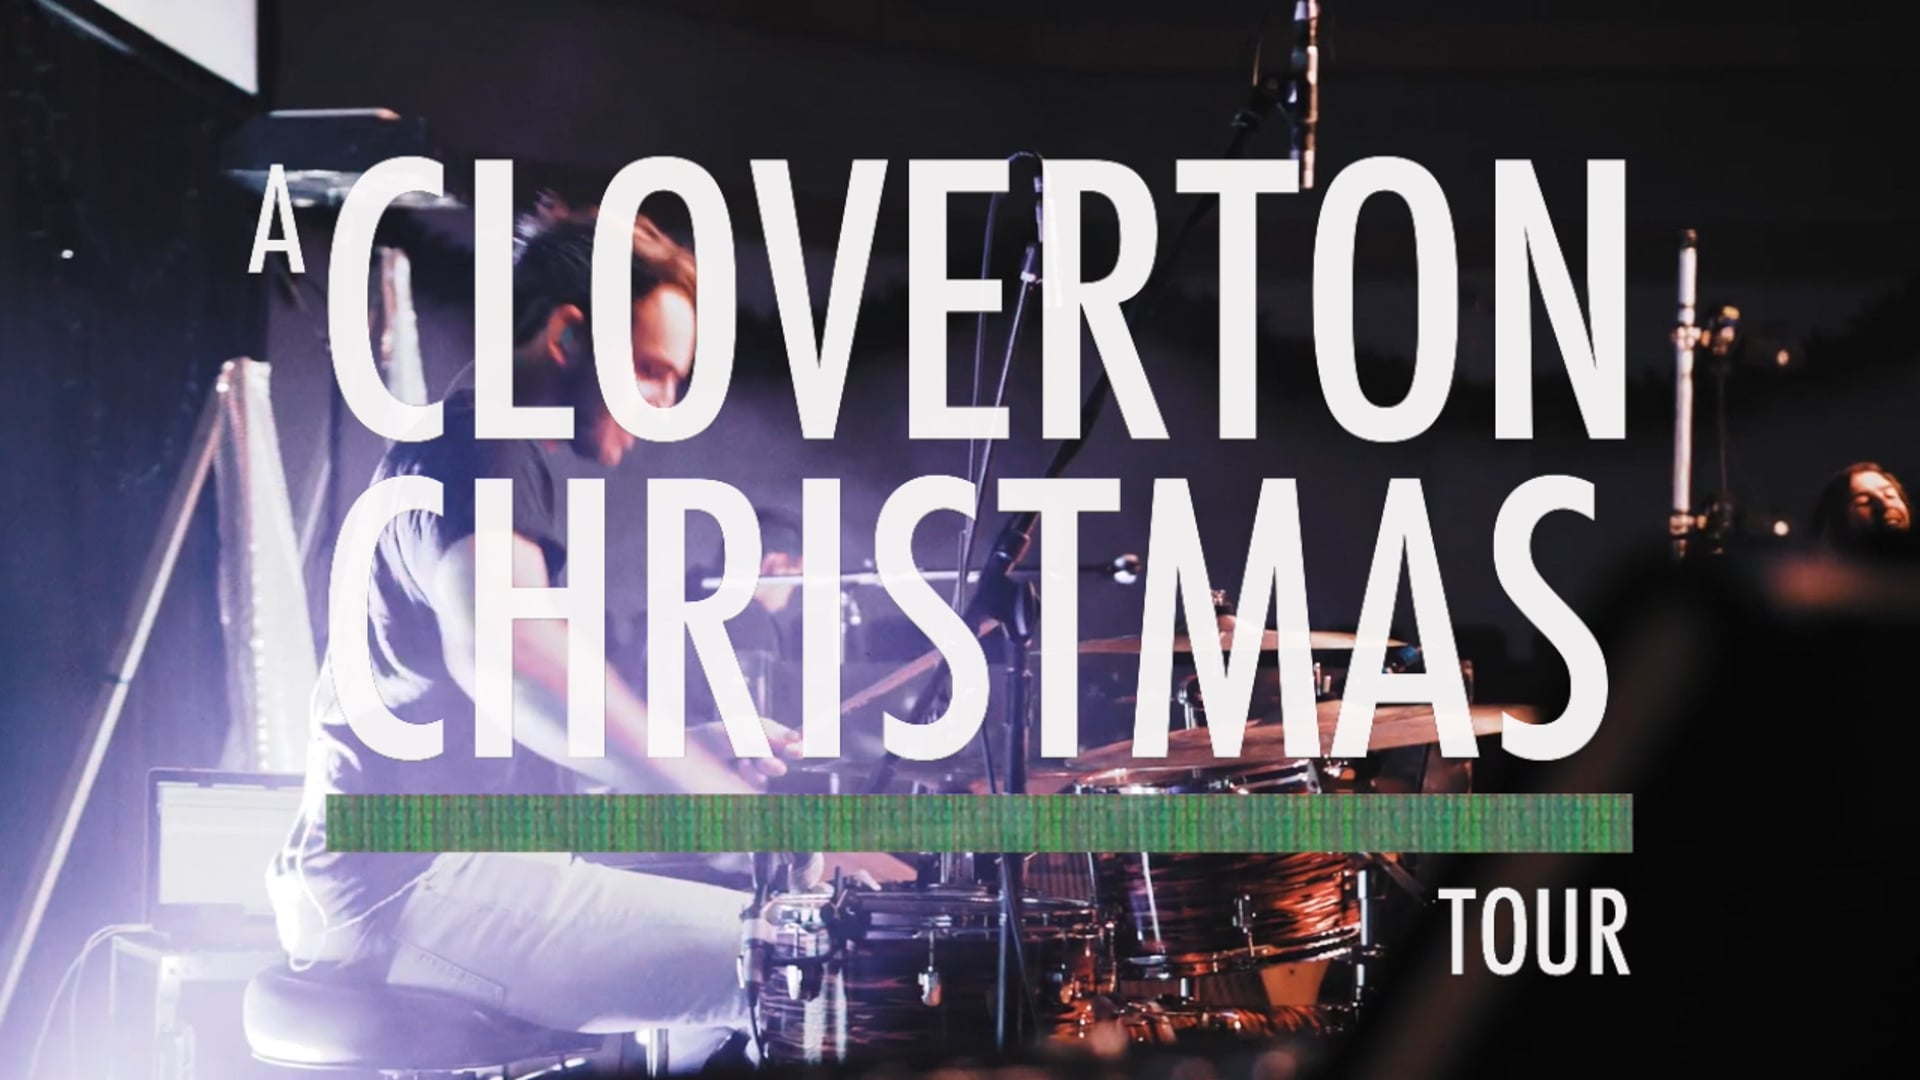 A Cloverton Christmas Concert